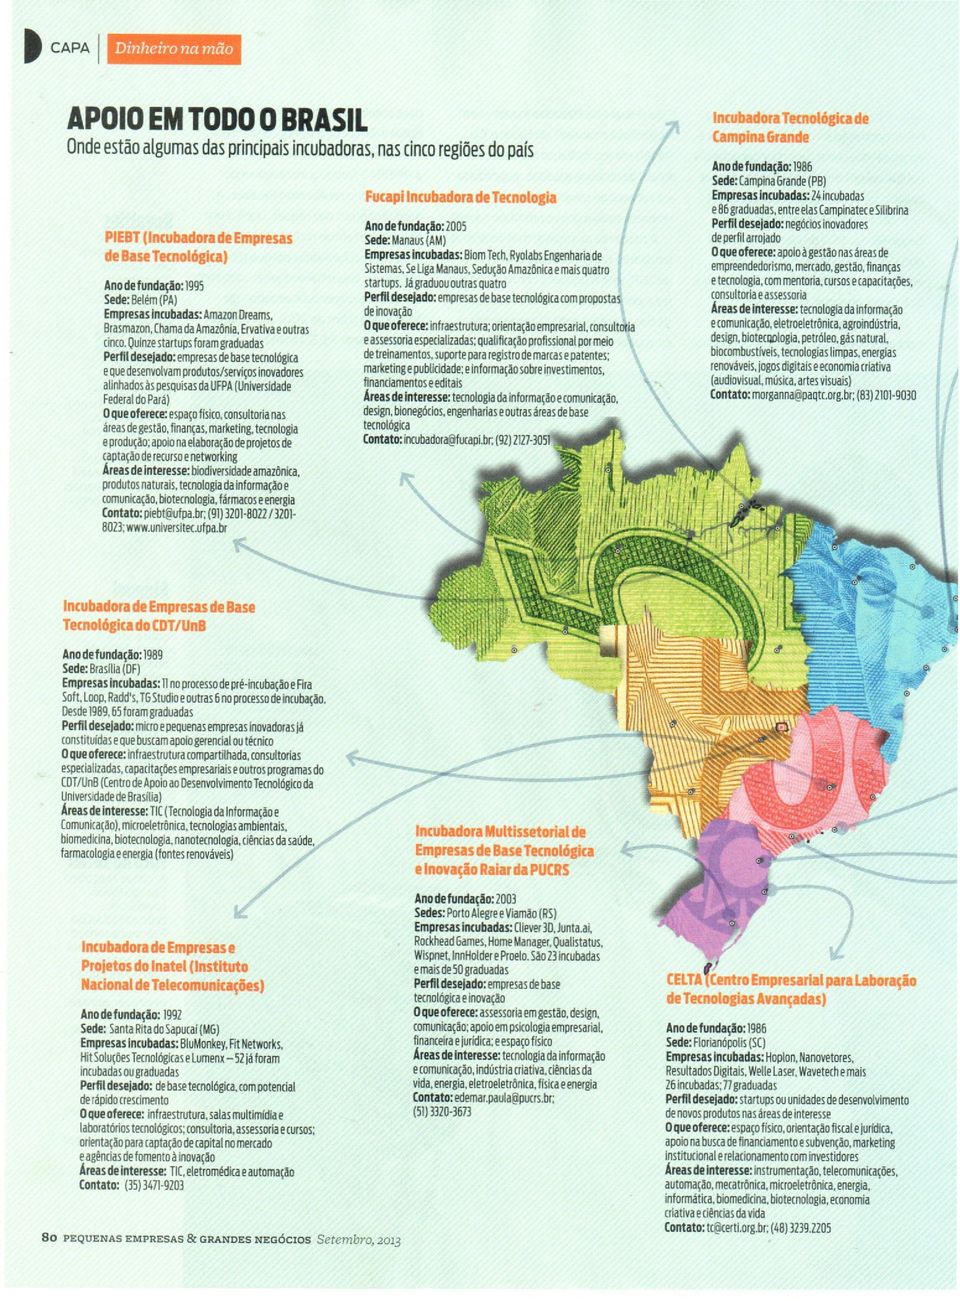 Quinze startups foram graduadas Perfil desejado: empresas de base teenológica eque desenvolvam produtos/serviços inovadores alinhados às pesquisas da UFPA (Universidade Federal do Pará) O que